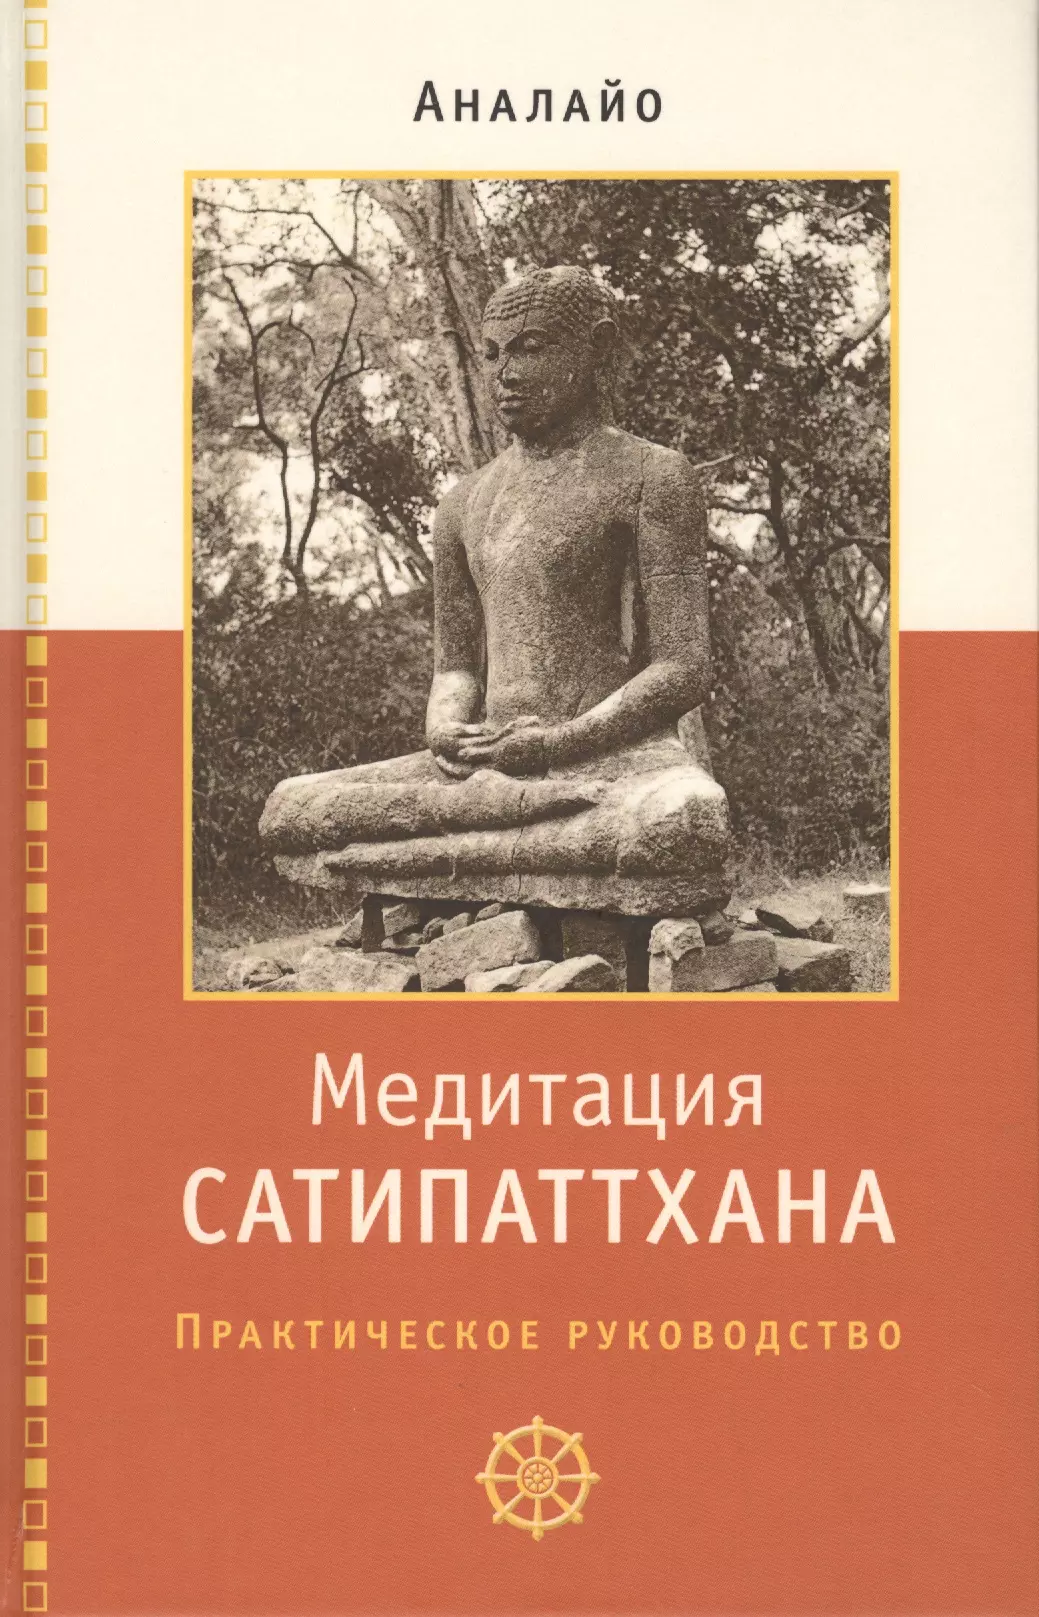 аналайо бхиккху введение в практику внимательного наблюдения буддийское обоснование и практические занятия Медитация сатипаттхана. Практическое руководство